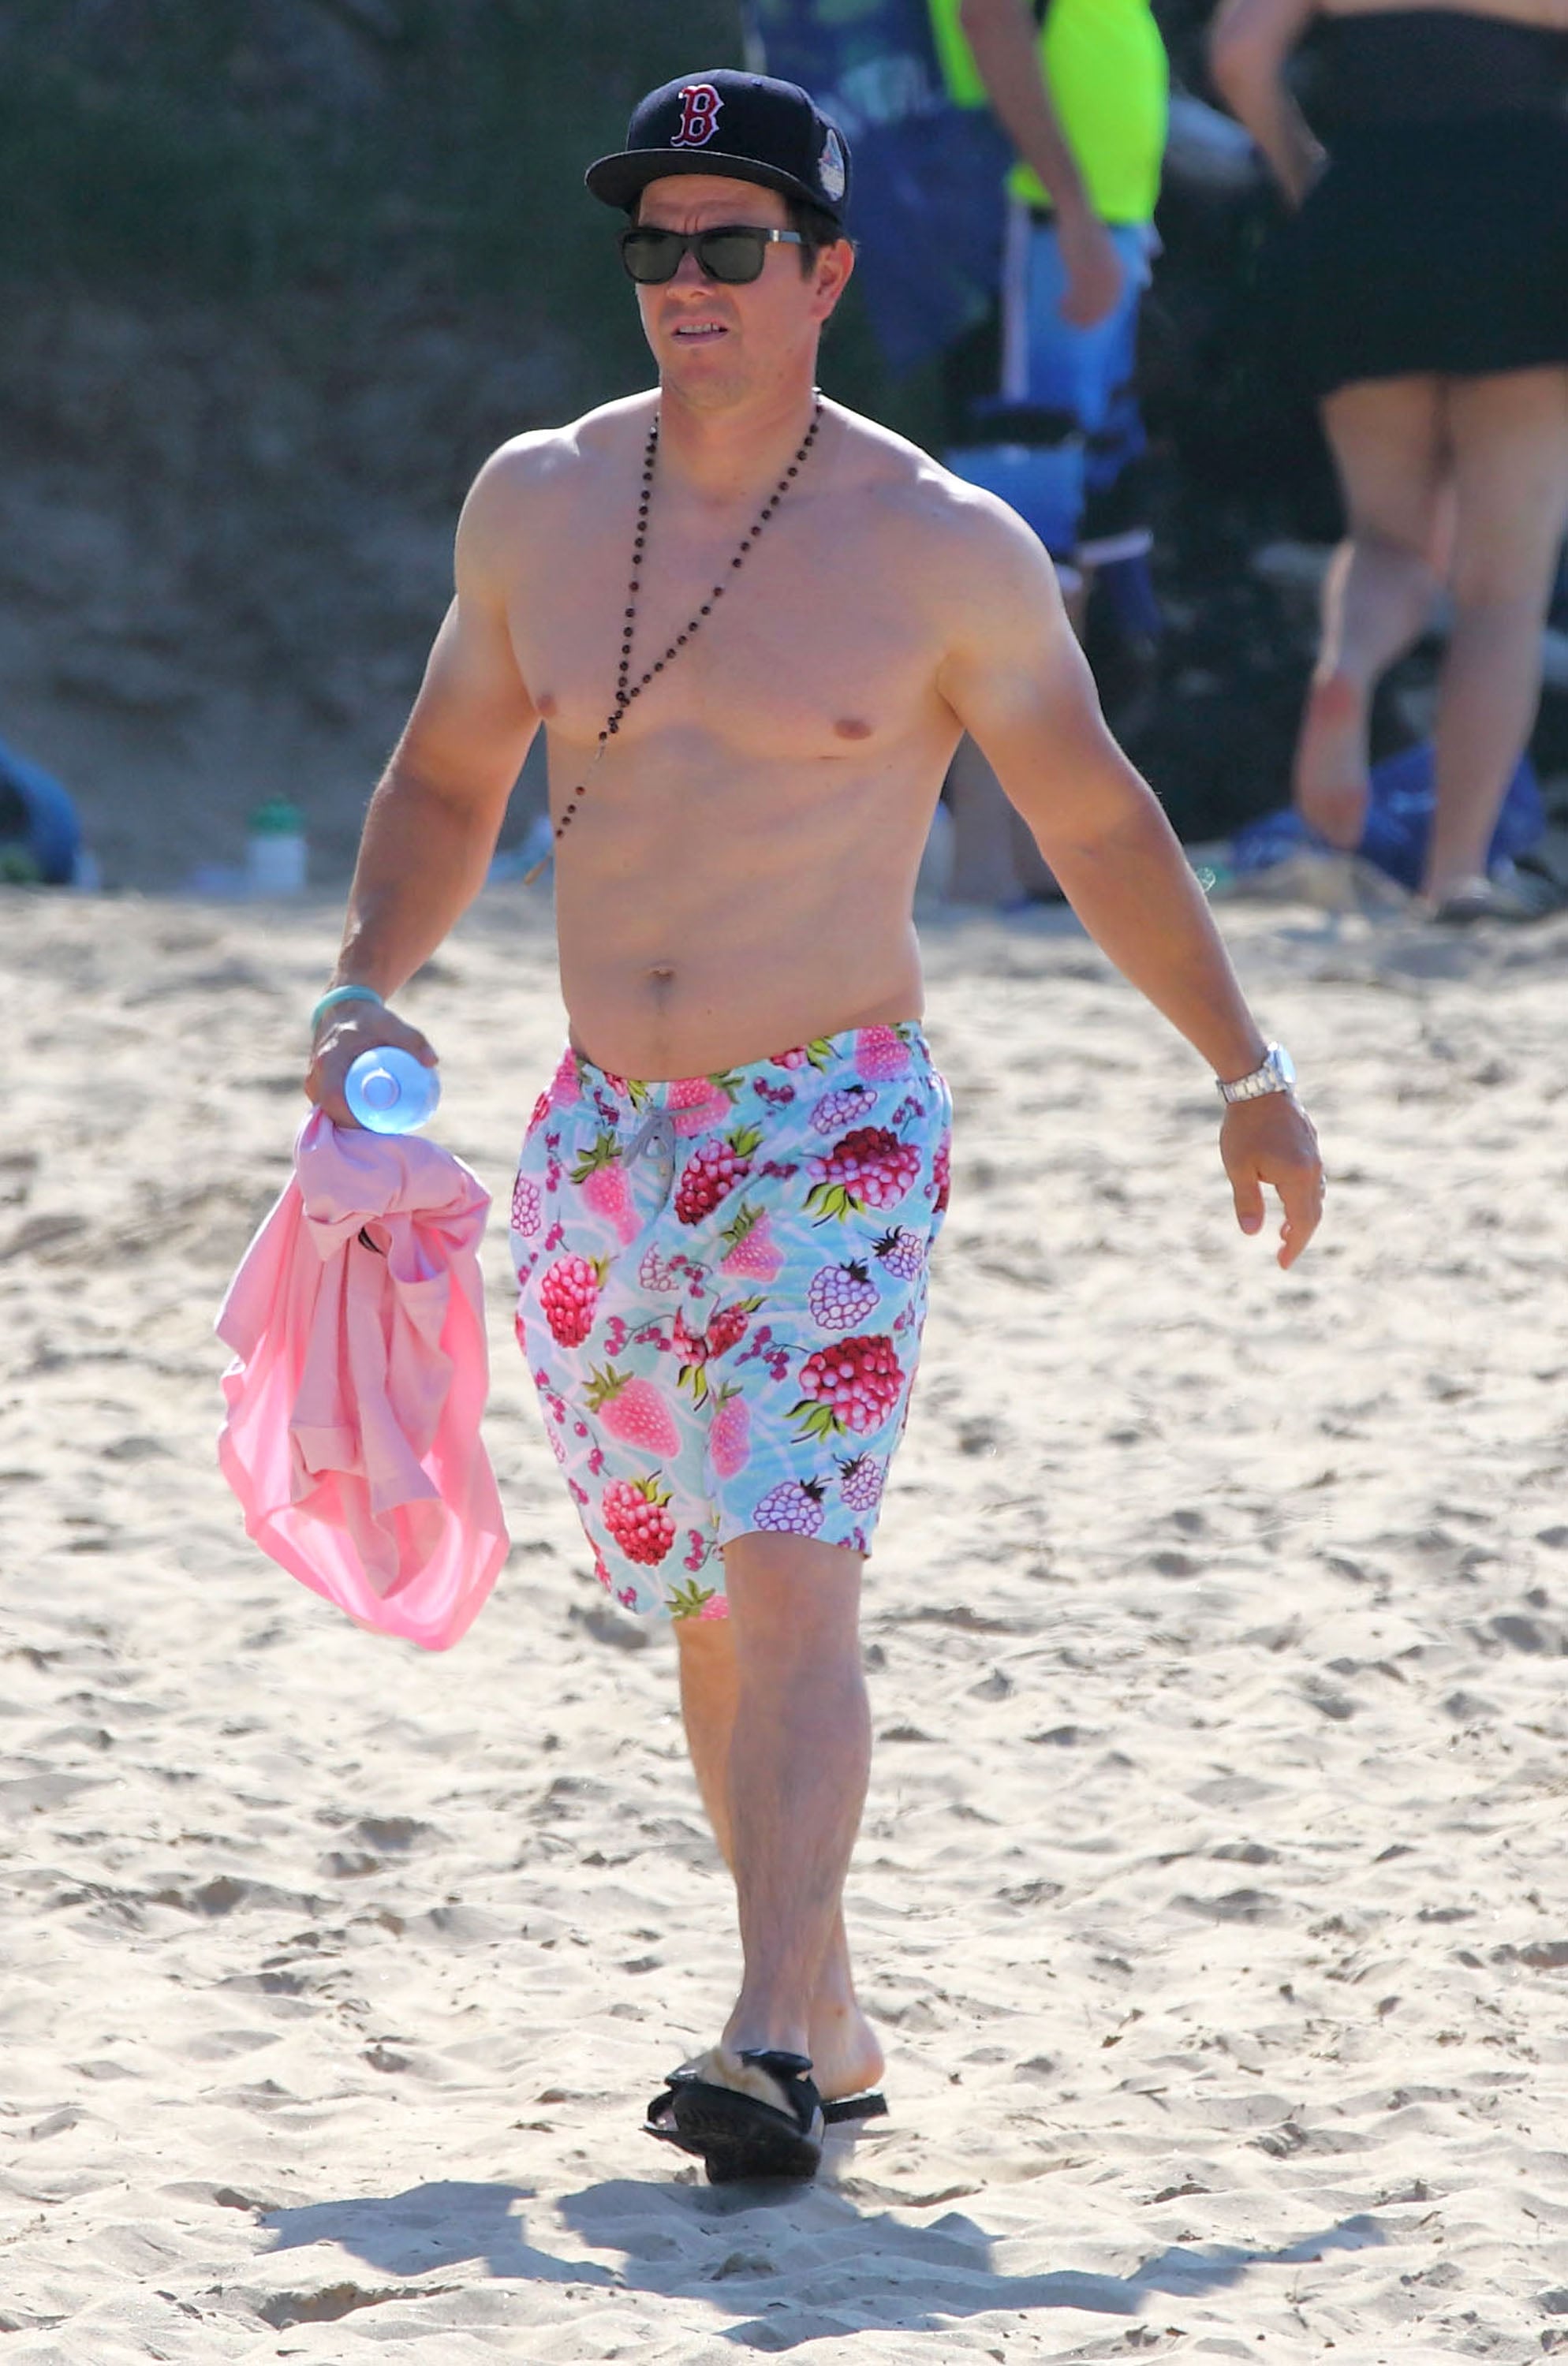 Mark Wahlberg With a Farmer's Tan on the Beach December 2015